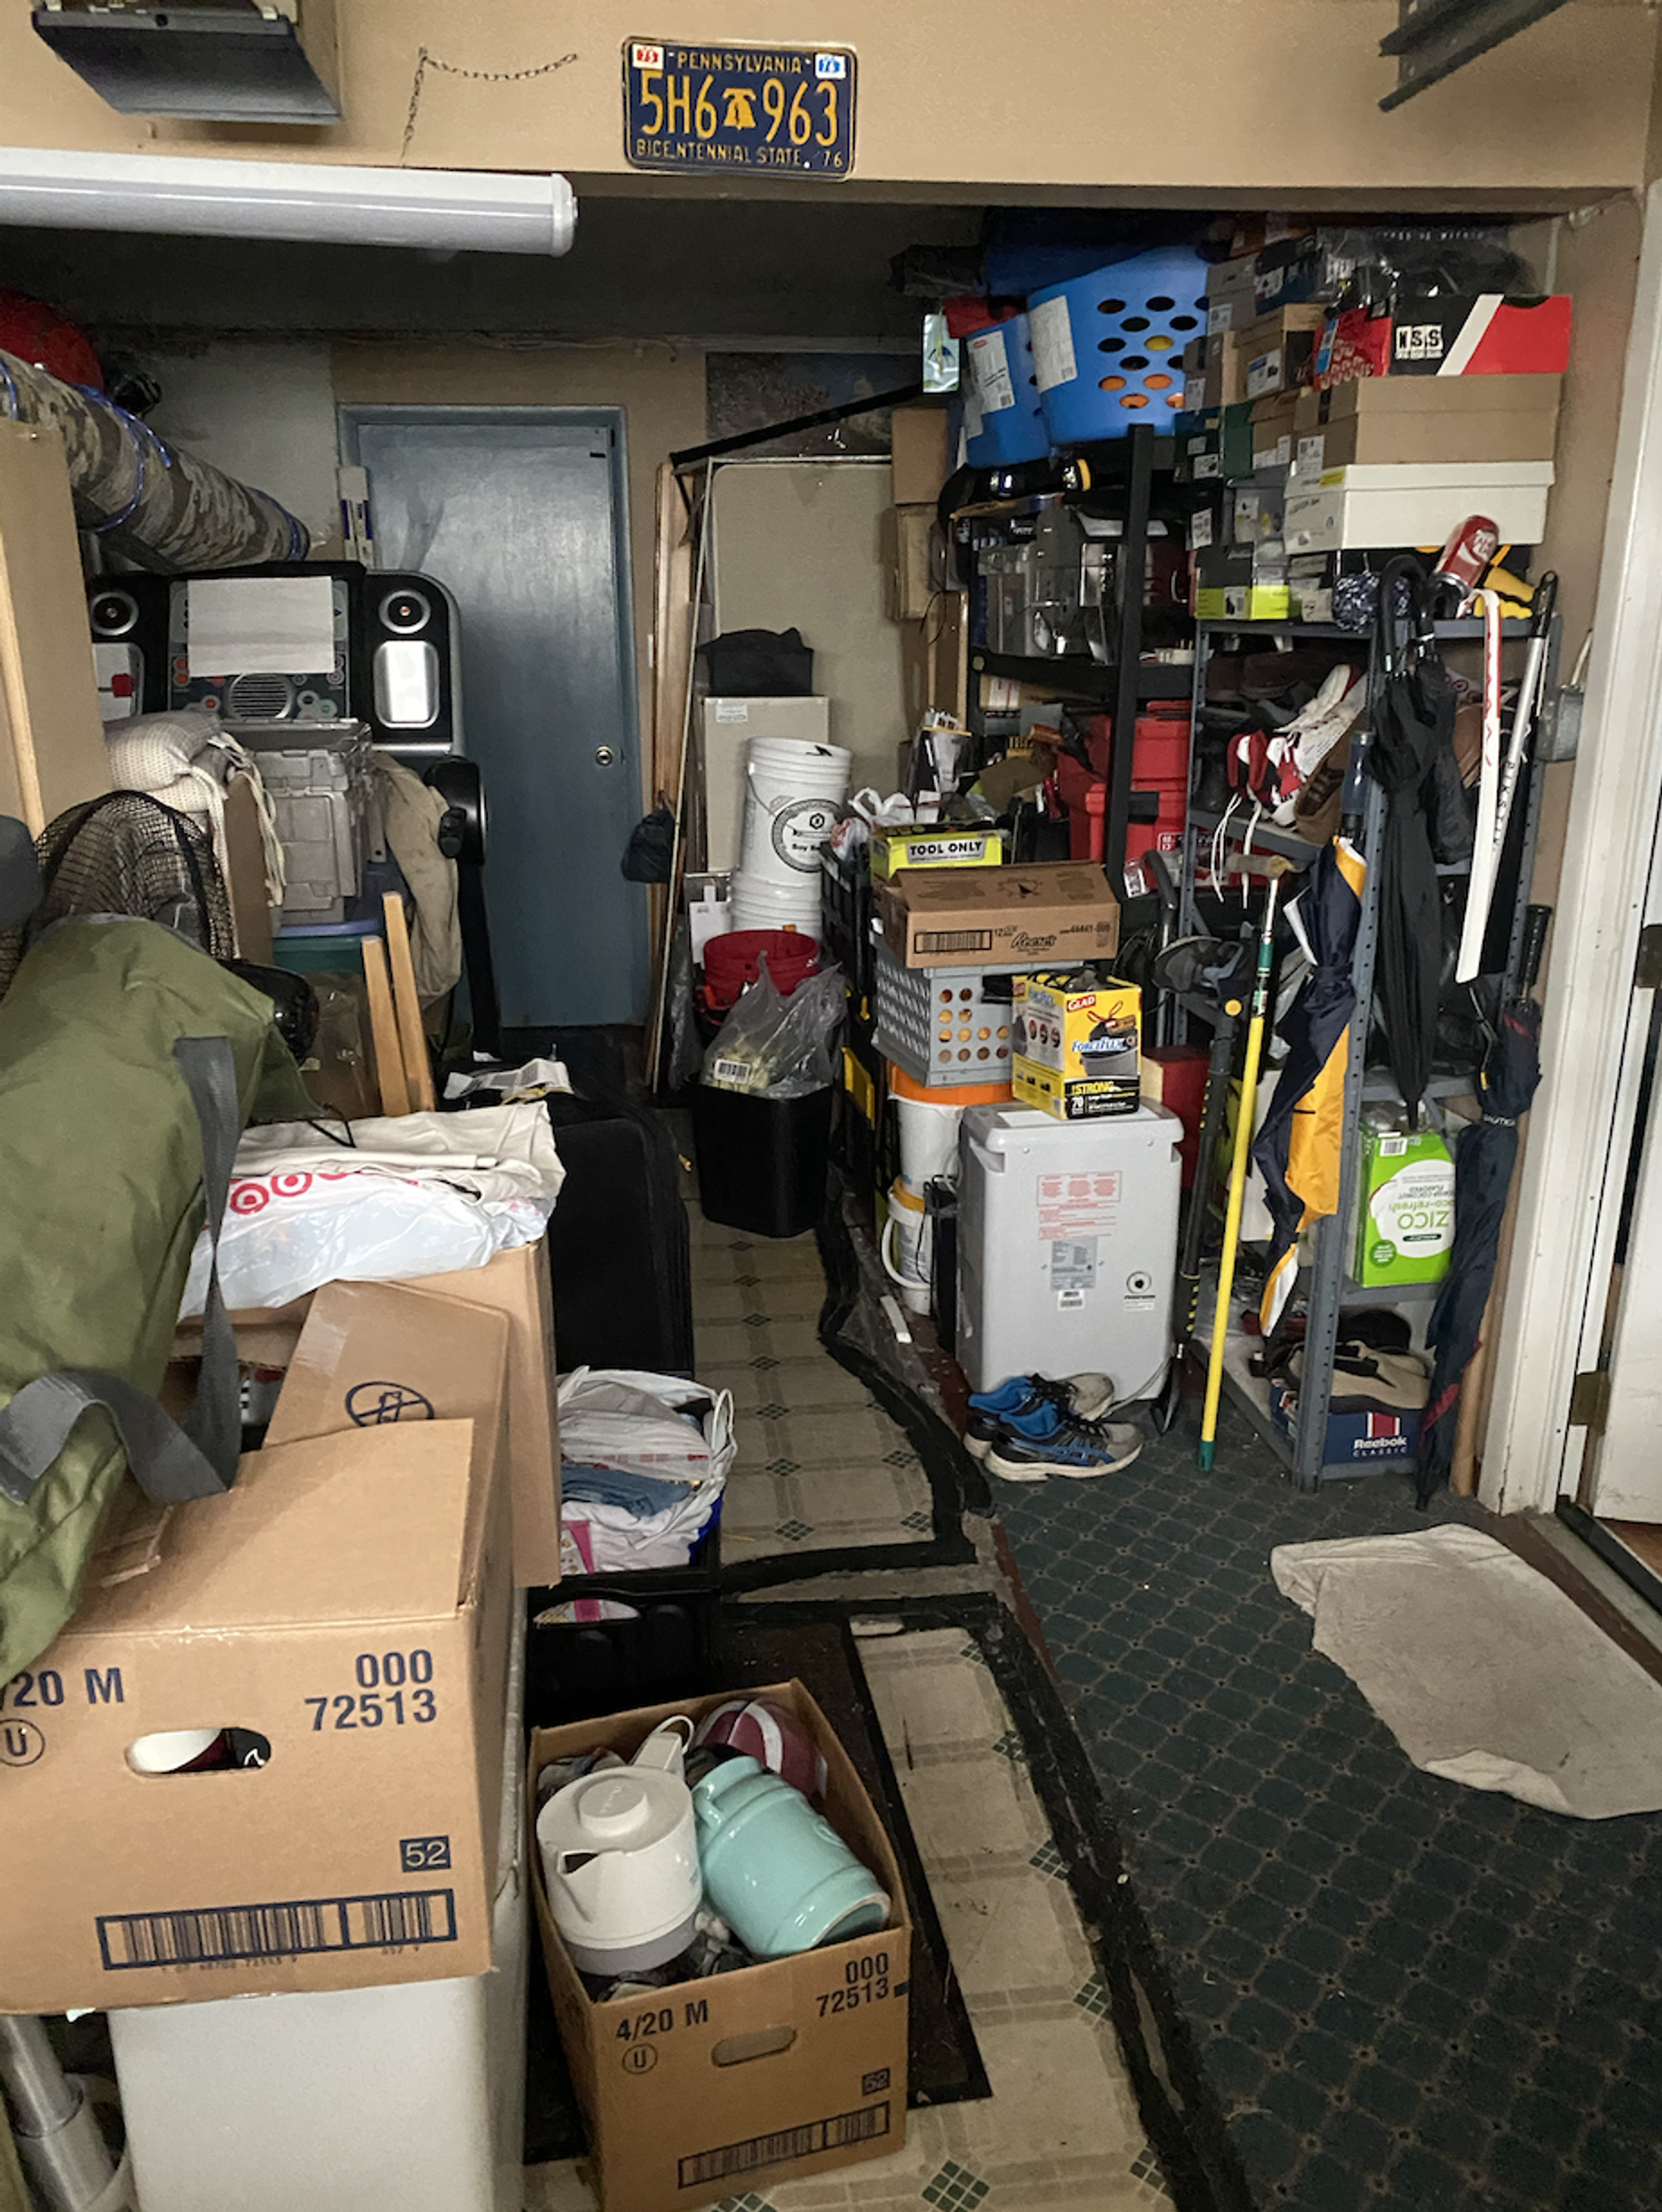 An iPhone photograph of a garage